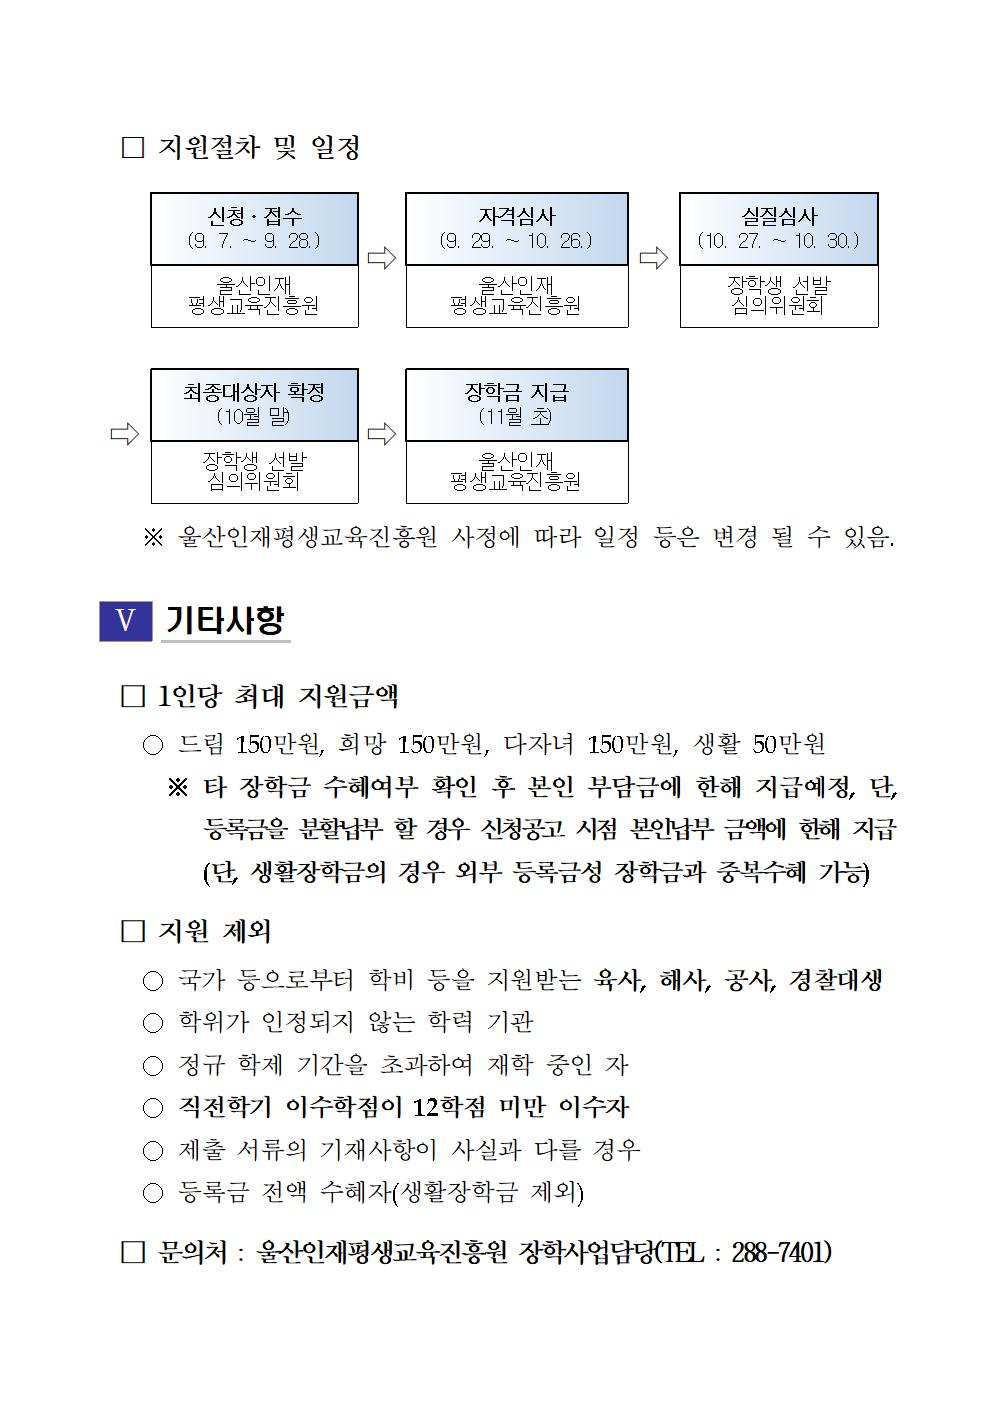 2020-2 재단법인 울산인재평생교육진흥원 장학생 선발계획